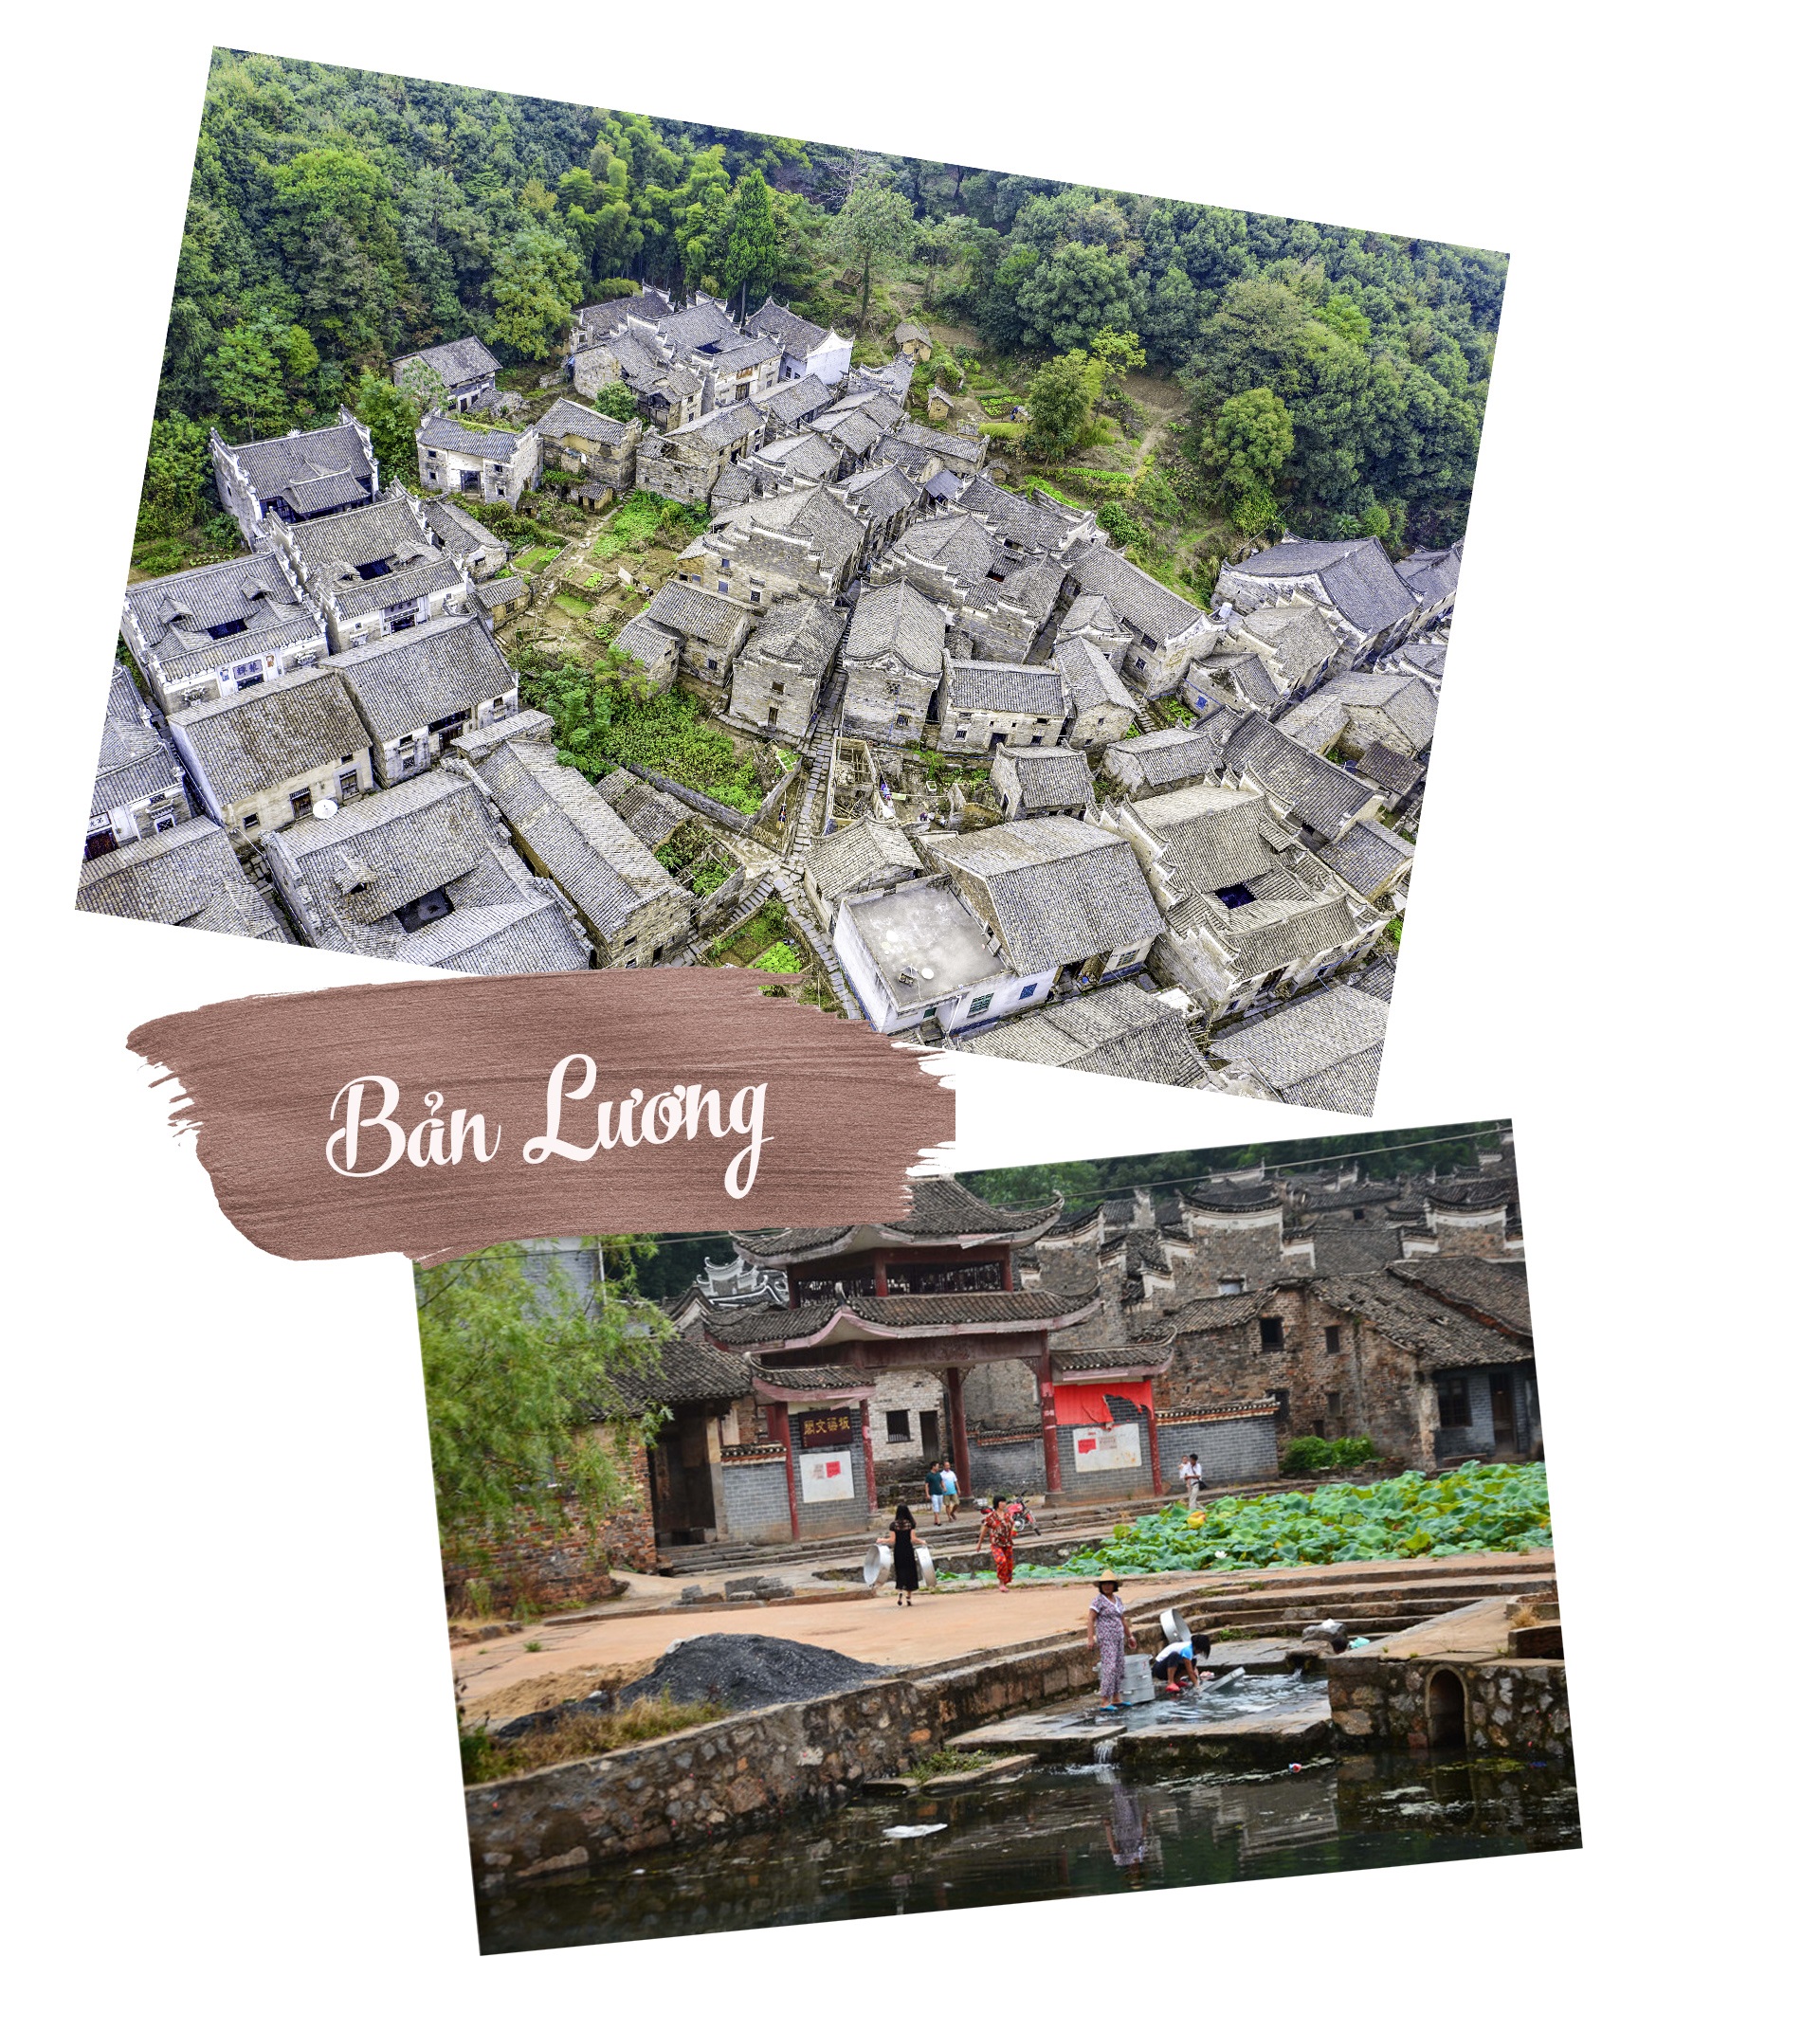 Ám ảnh những ngôi làng cổ xinh đẹp bị bỏ hoang ở Trung Quốc - 7